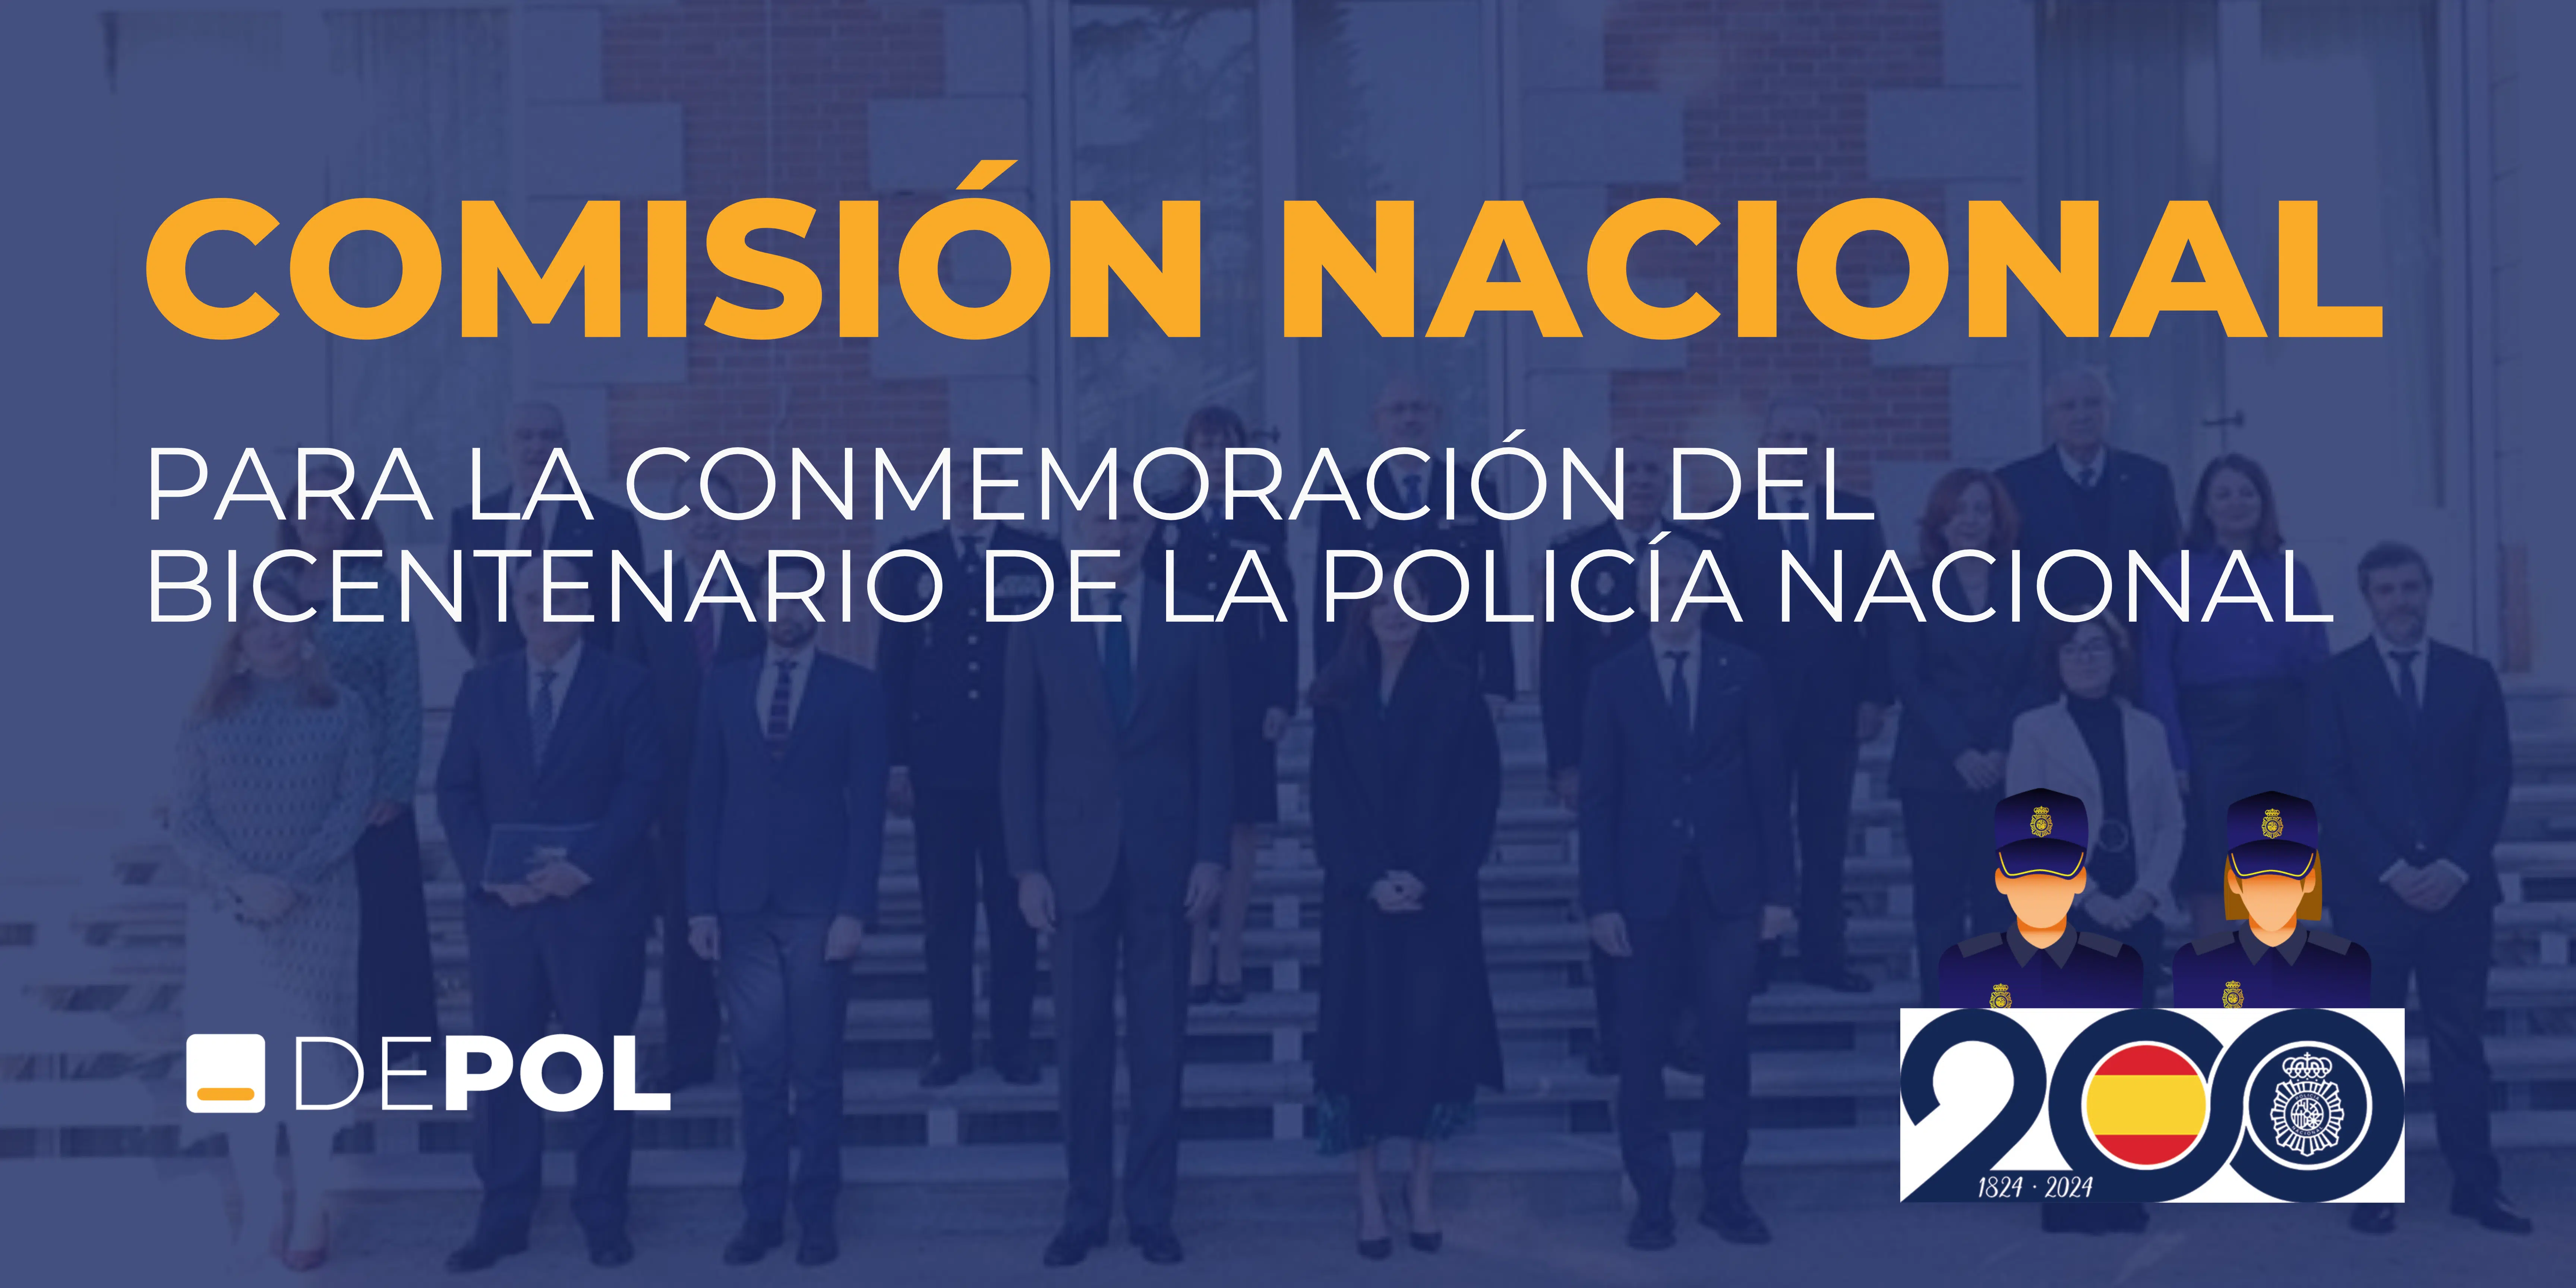 Comisión Nacional para la conmemoración del Bicentenario de la Policía Nacional